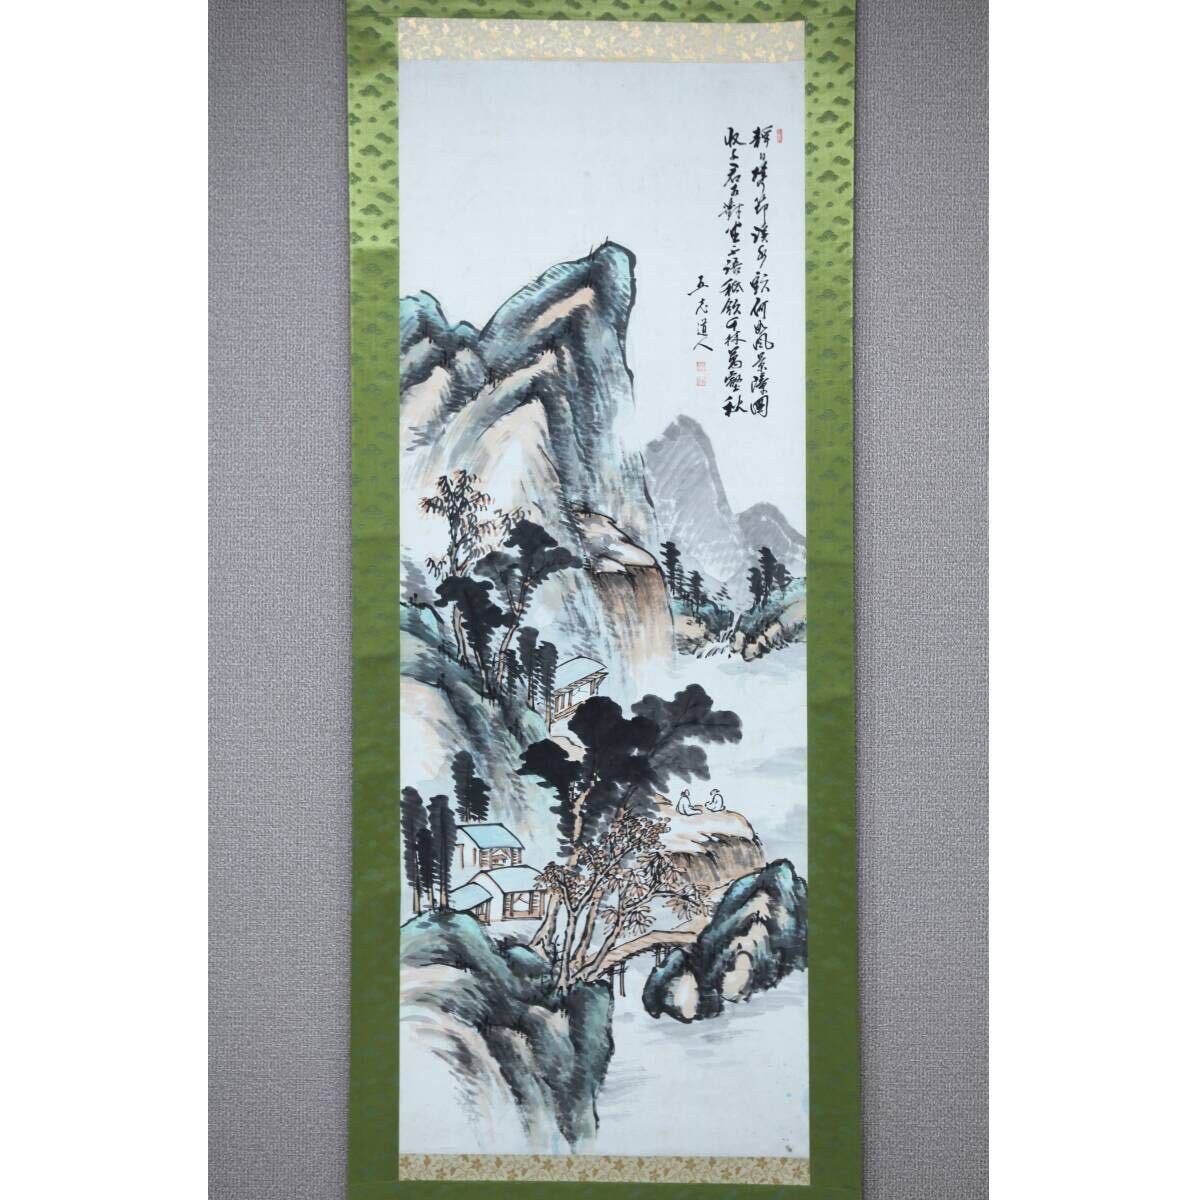 [प्रामाणिक] [पवनचक्की] हतोरी गोरो कीज़ान जोड़ी बैठी ◎हाथ से चित्रित कागज़ ◎त्सुरुओका से नानपा चित्रकार, यामागाटा प्रान्त, तनोमुरा चोइन्यु के अधीन अध्ययन किया, चीनी पेंटिंग, जापानी चित्रकला, चित्रकारी, जापानी चित्रकला, परिदृश्य, हवा और चाँद